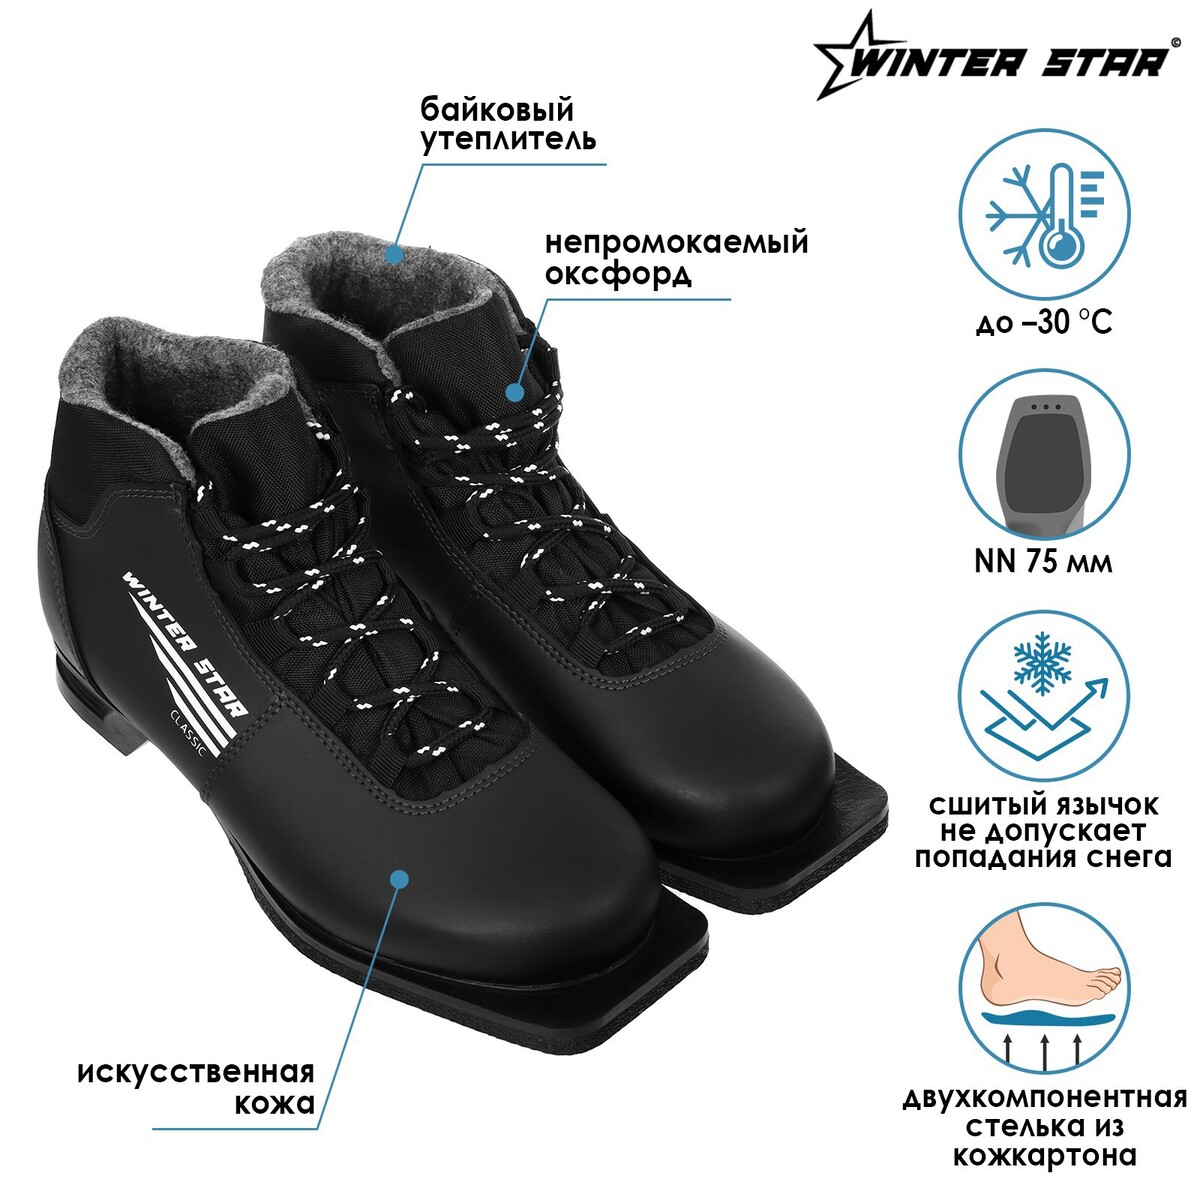 Ботинки Winter Star 04752061: купить за 2620 руб в интернет магазине сбесплатной доставкой